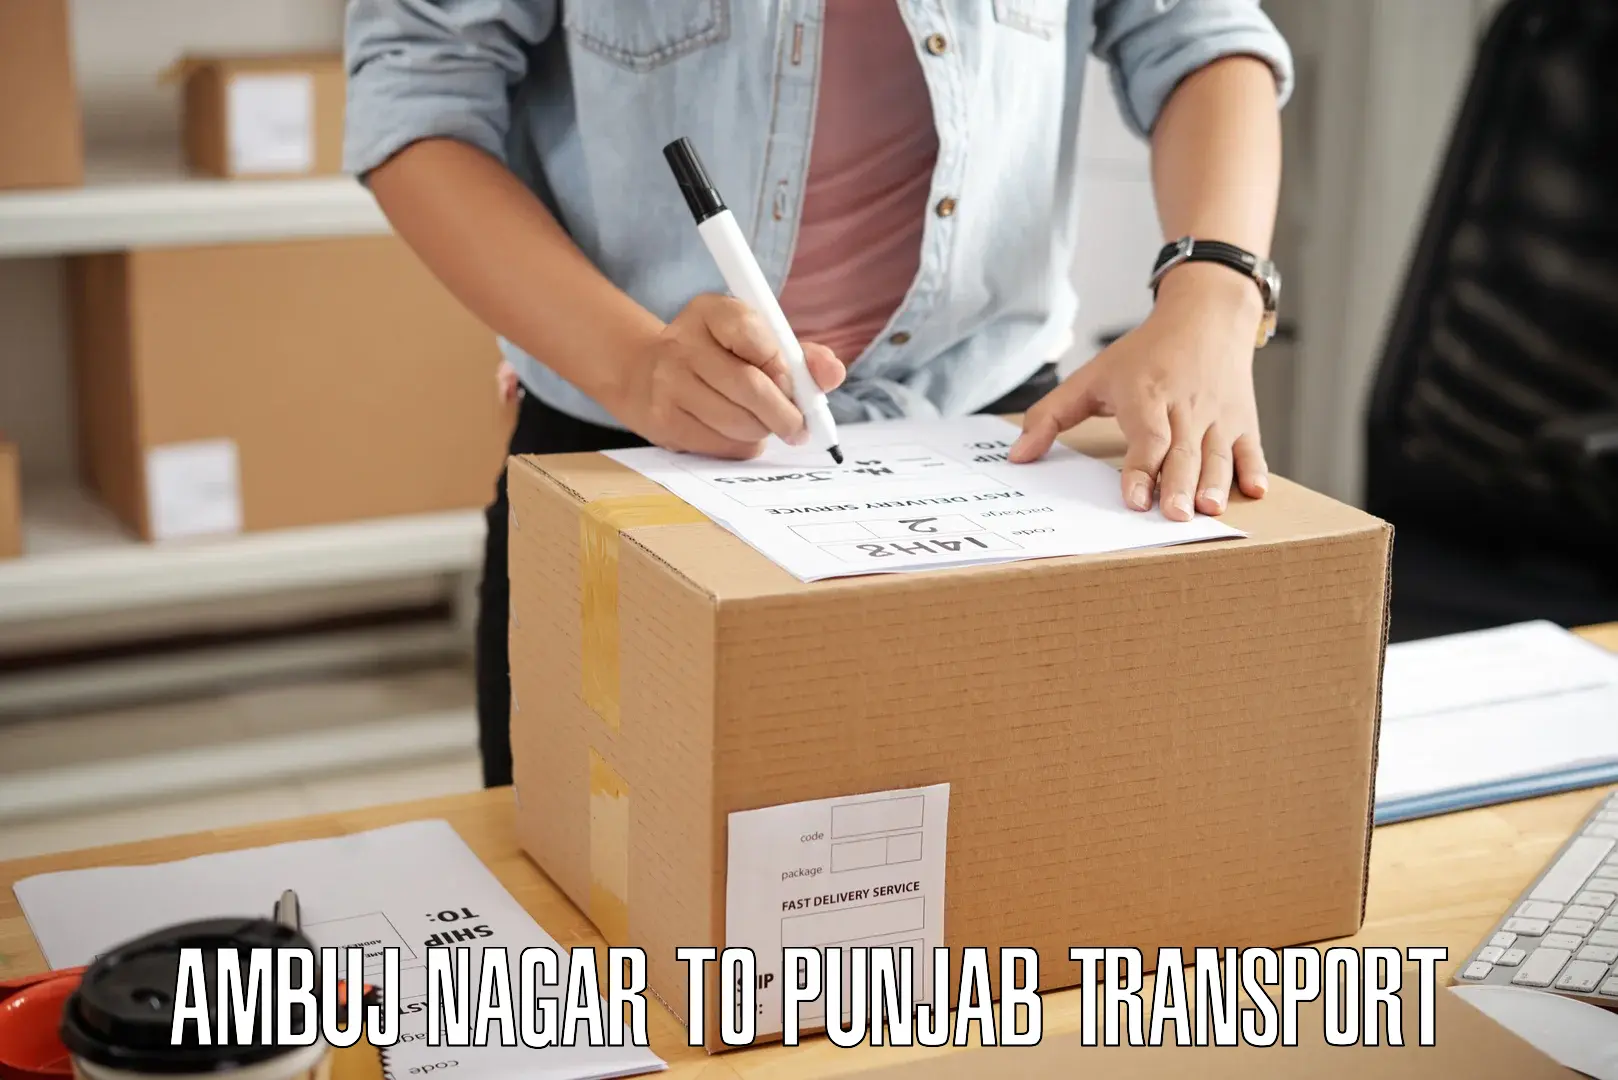 Delivery service in Ambuj Nagar to Malerkotla